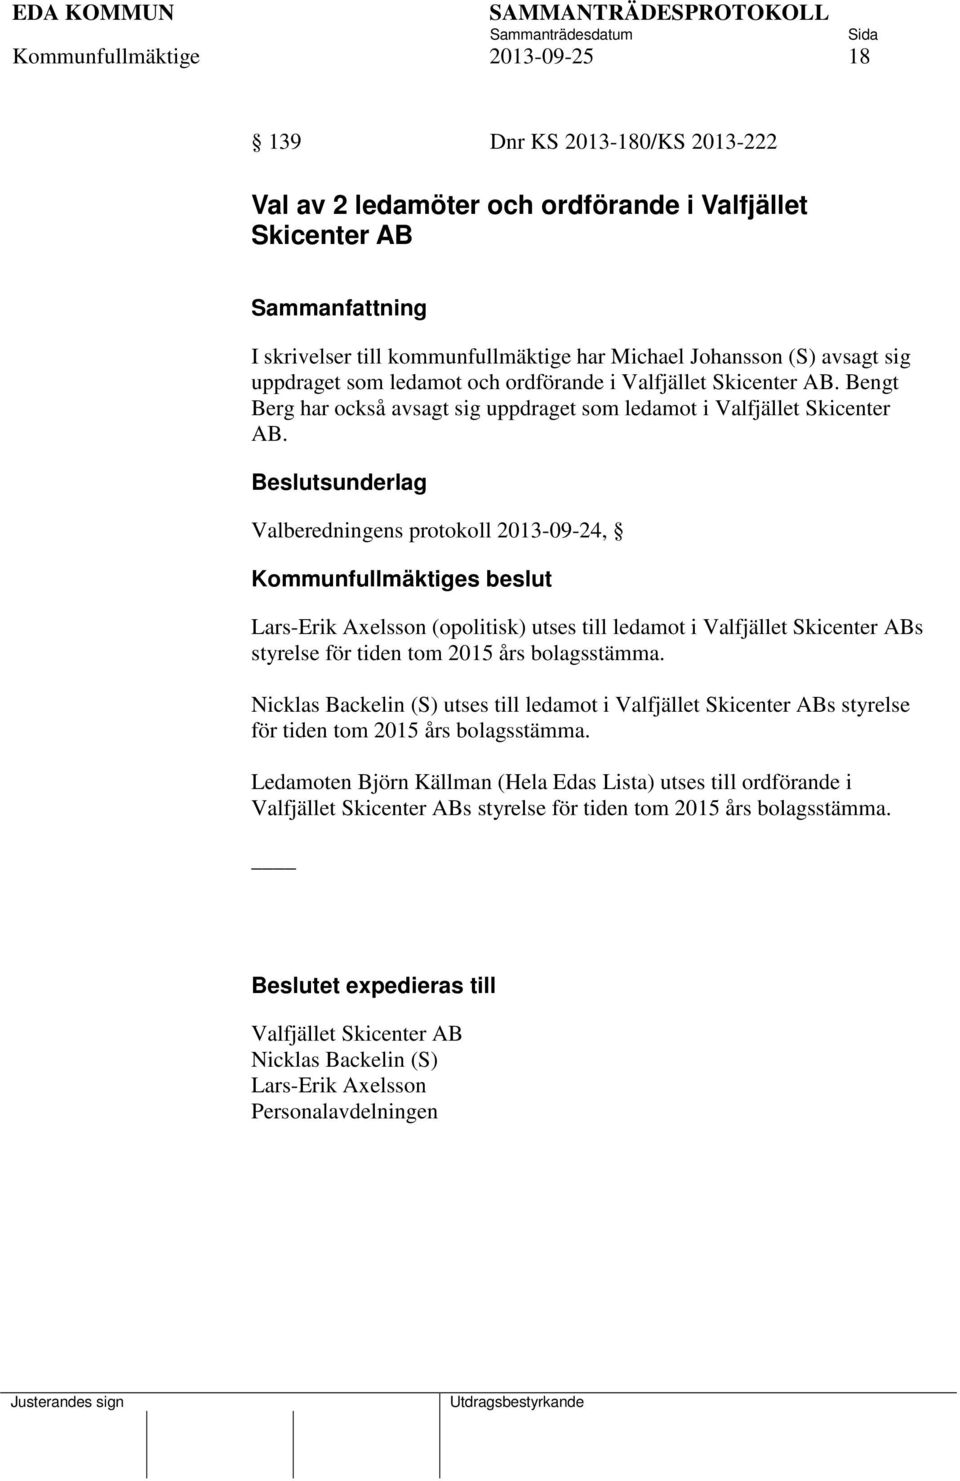 Valberedningens protokoll 2013-09-24, Lars-Erik Axelsson (opolitisk) utses till ledamot i Valfjället Skicenter ABs styrelse för tiden tom 2015 års bolagsstämma.